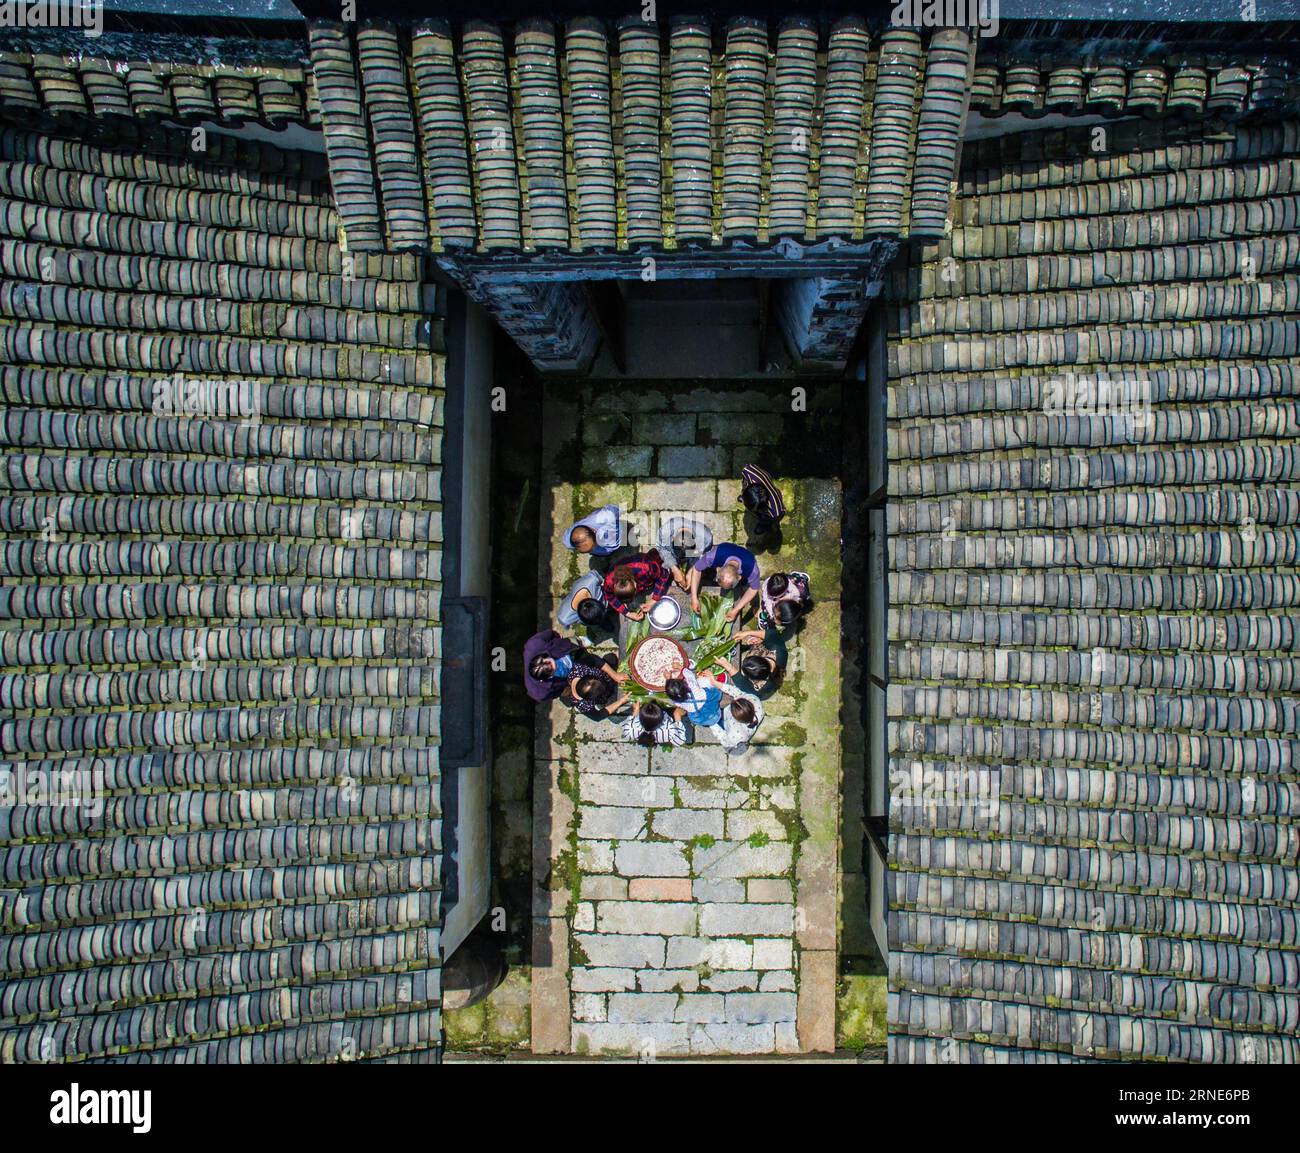 (160612) -- PEKING, 12. Juni 2016 -- die Dorfbewohner machen Zongzi, einen klebrigen Reisknödel, der in Bambus oder Schilfblätter gehüllt ist, anlässlich des bevorstehenden Dragon Boat Festivals oder Duanwu auf Chinesisch, auf dem Hof eines alten Hauses im Dorf Yigao in Huzhou, Provinz Zhejiang in Ostchina, 5. Juni 2016. ) WÖCHENTLICHE AUSWAHL VON XINHUA-FOTO XuxYu PUBLICATIONxNOTxINxCHN 160612 Peking 12. Juni 2016 die Dorfbewohner machen Zongzi zu einem klebrigen Reisknödel, der in Bambus oder Schilfblätter gewickelt ist, um das bevorstehende Dragon BOAT Festival oder Duanwu auf Chinesisch IM Yard of to Old House IM Dorf Huzhou Ostchina zu markieren s ZH Stockfoto